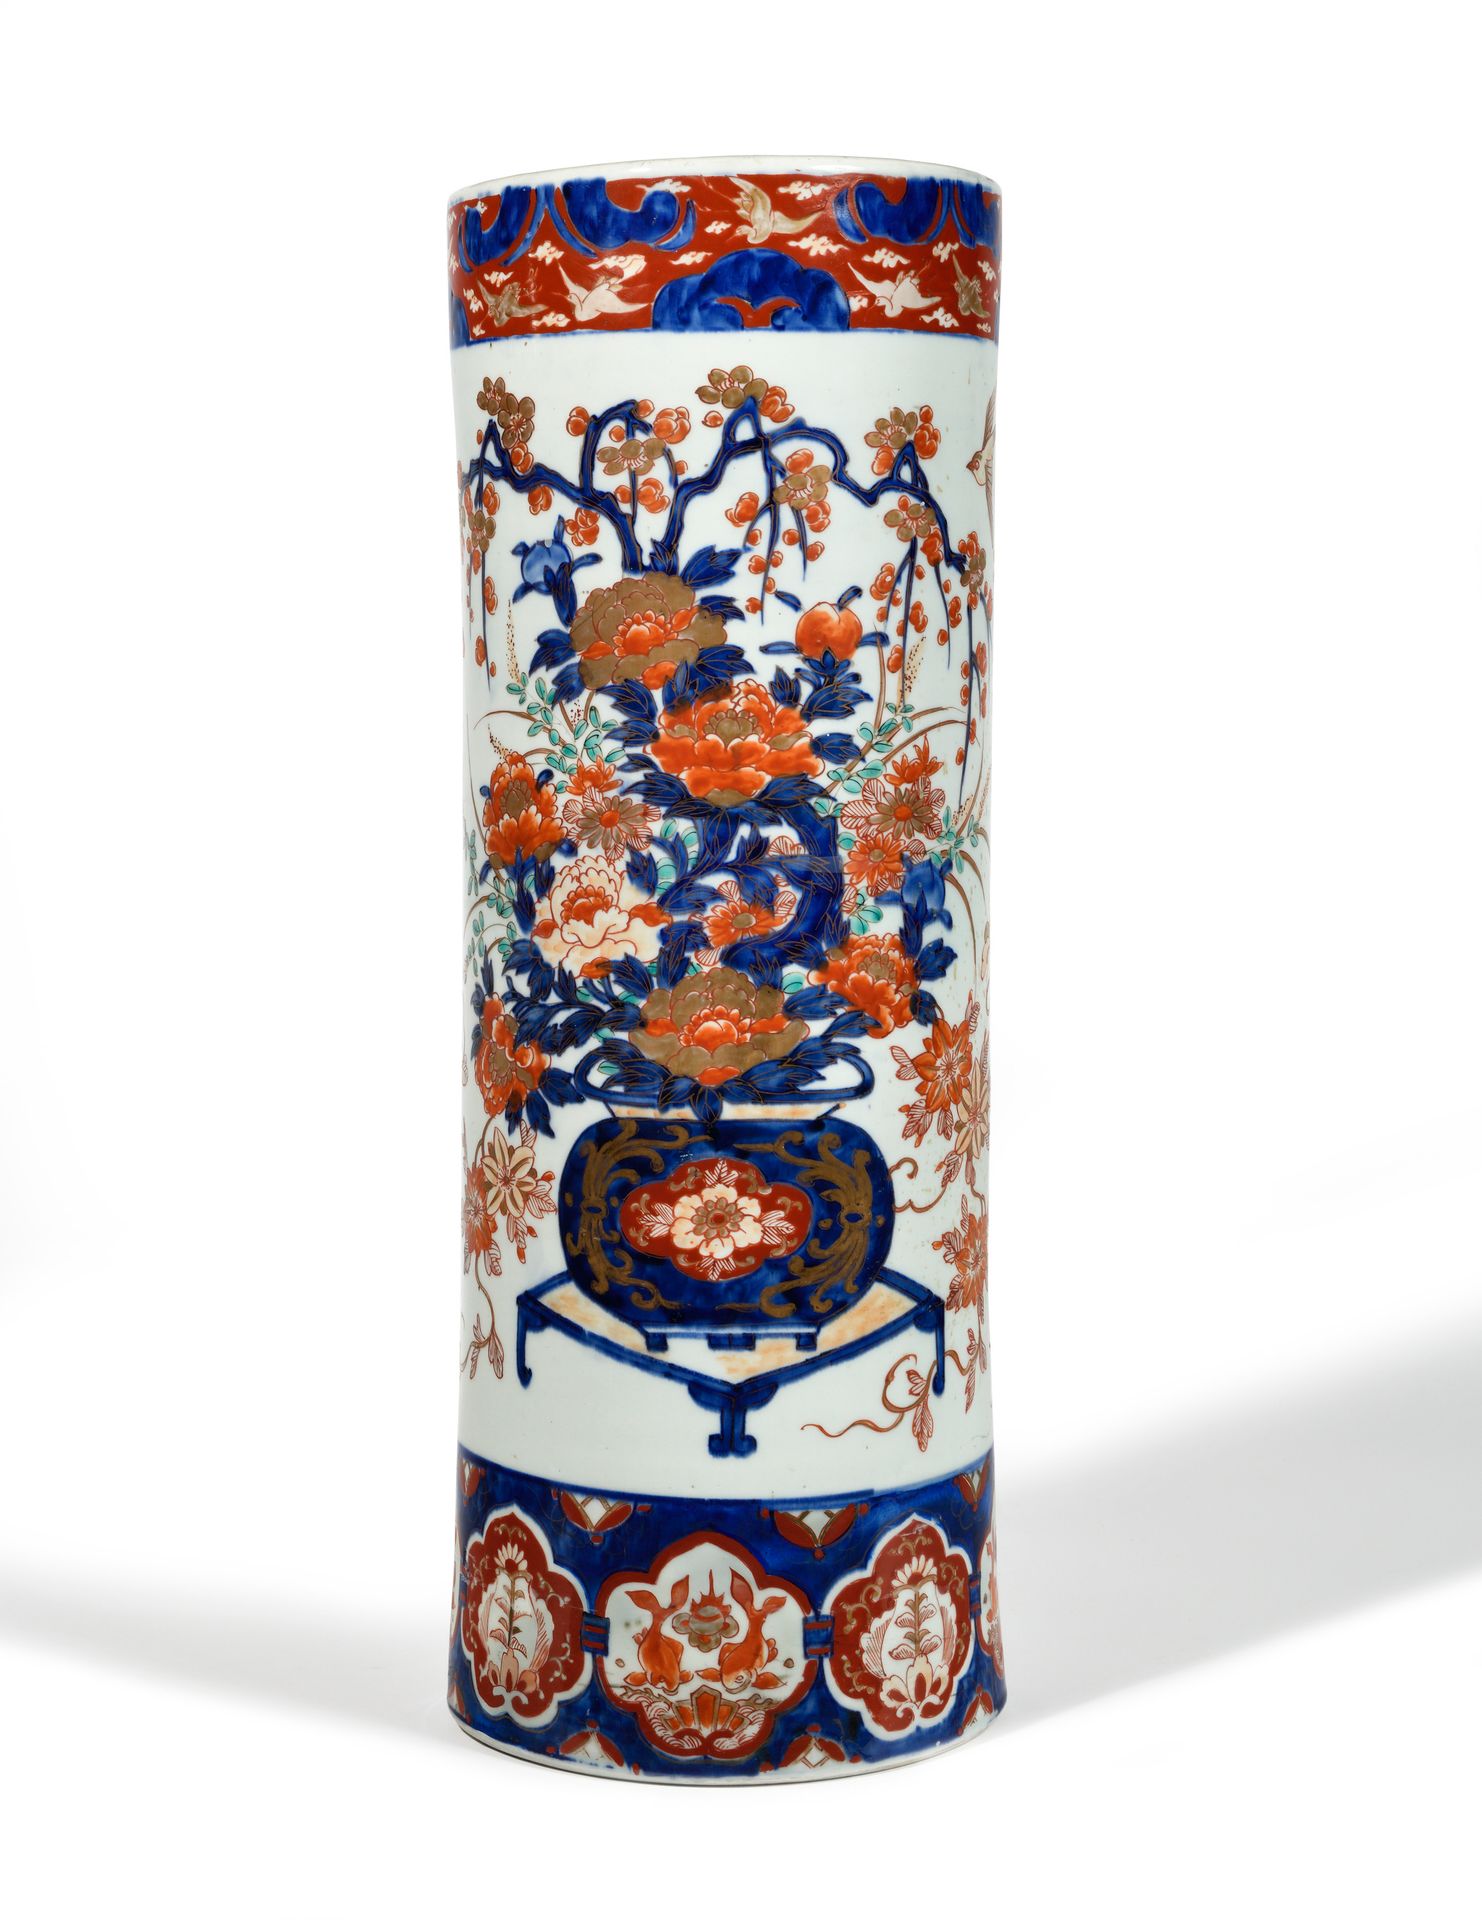 Null 管状伞架
伊万里风格的釉陶。 
十九世纪。 
高度：62 厘米